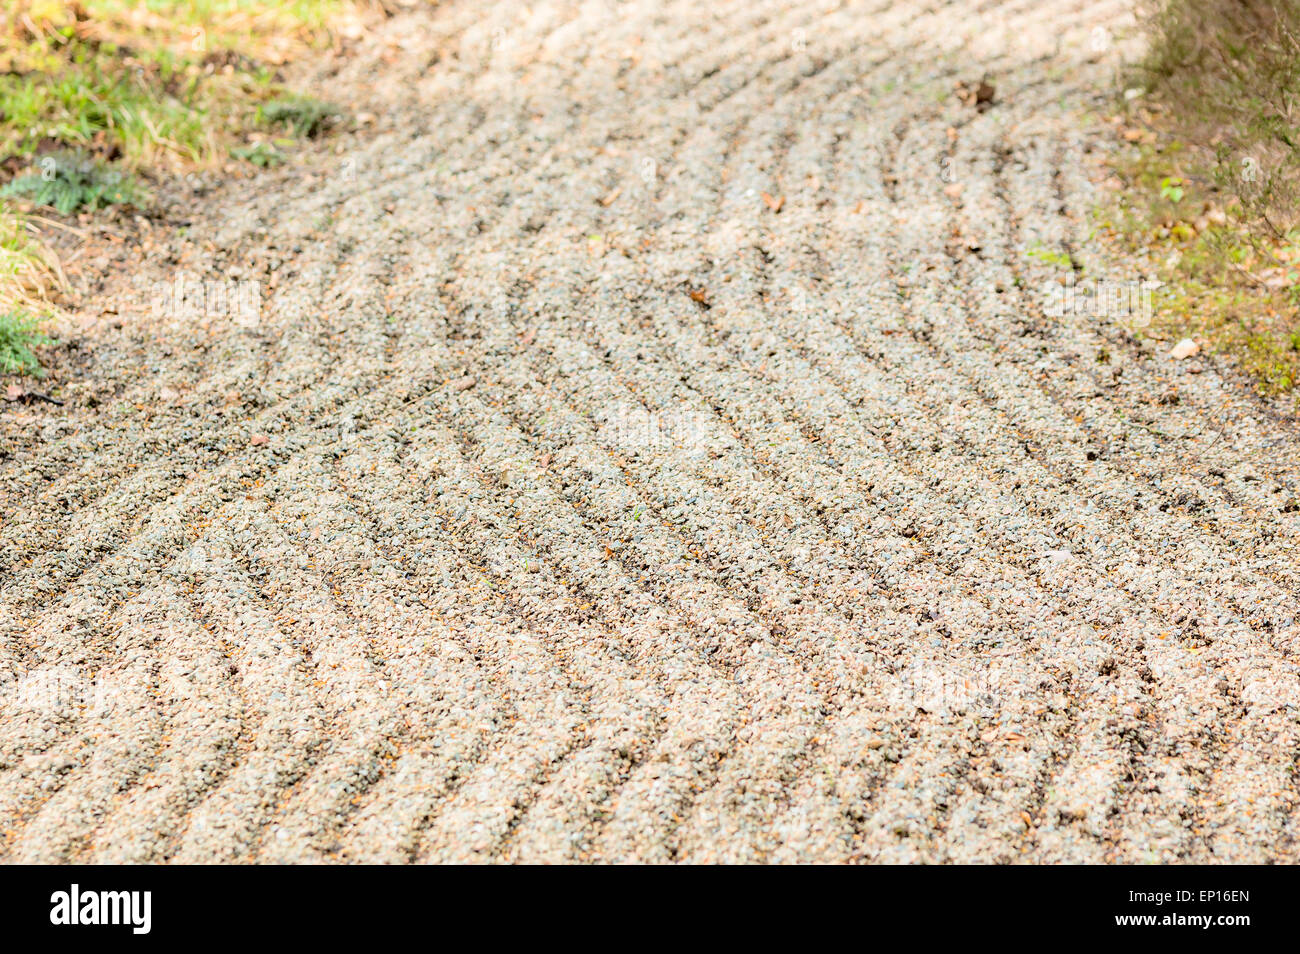 Les tendances d'gravel de jardin japonais. Profondeur de champ, mise au point d'environ un tiers au fond. Banque D'Images